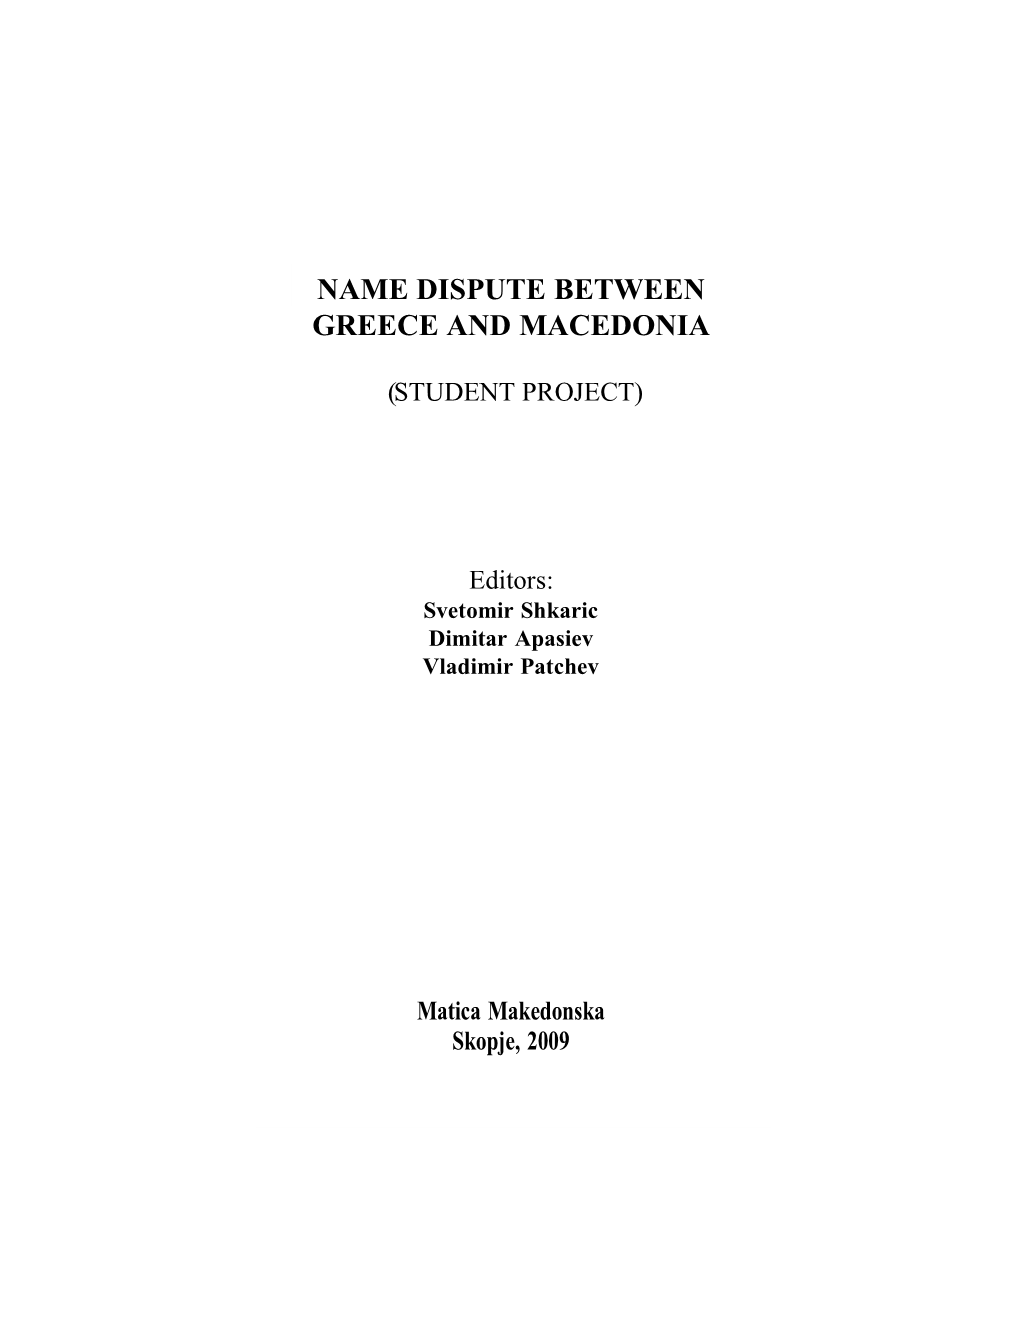 Name Dispute Between Greece and Macedonia